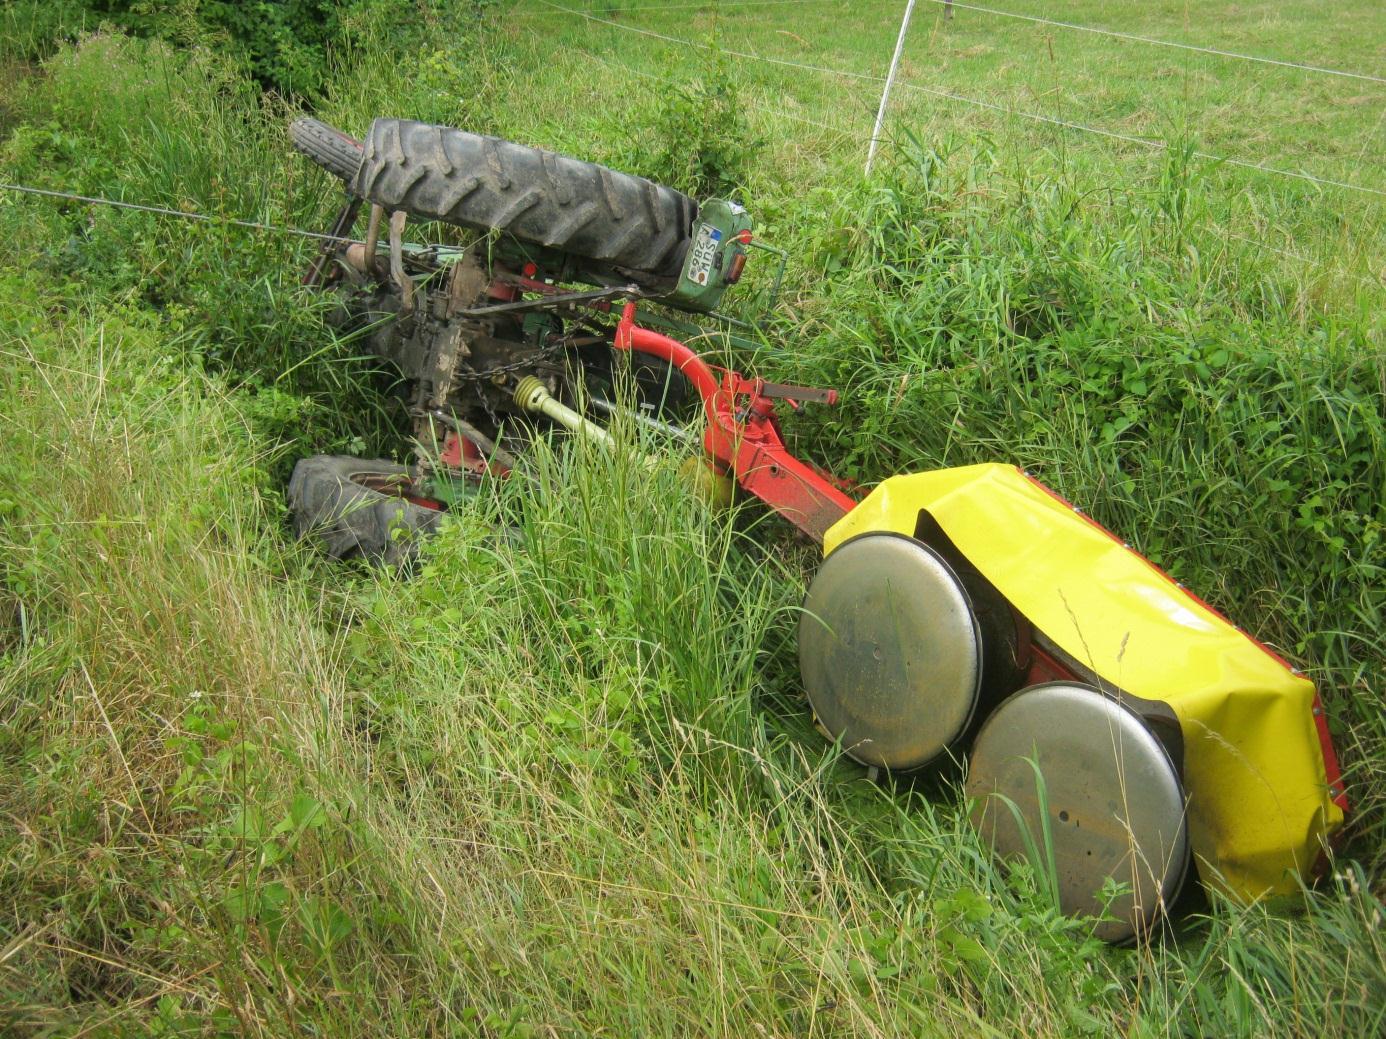 Bild: Tragisch endete das Jugendprogramm Ferien auf dem Bauernhof : Ein 49-jähriger Landwirt aus Gommersheim kam am 29.07.